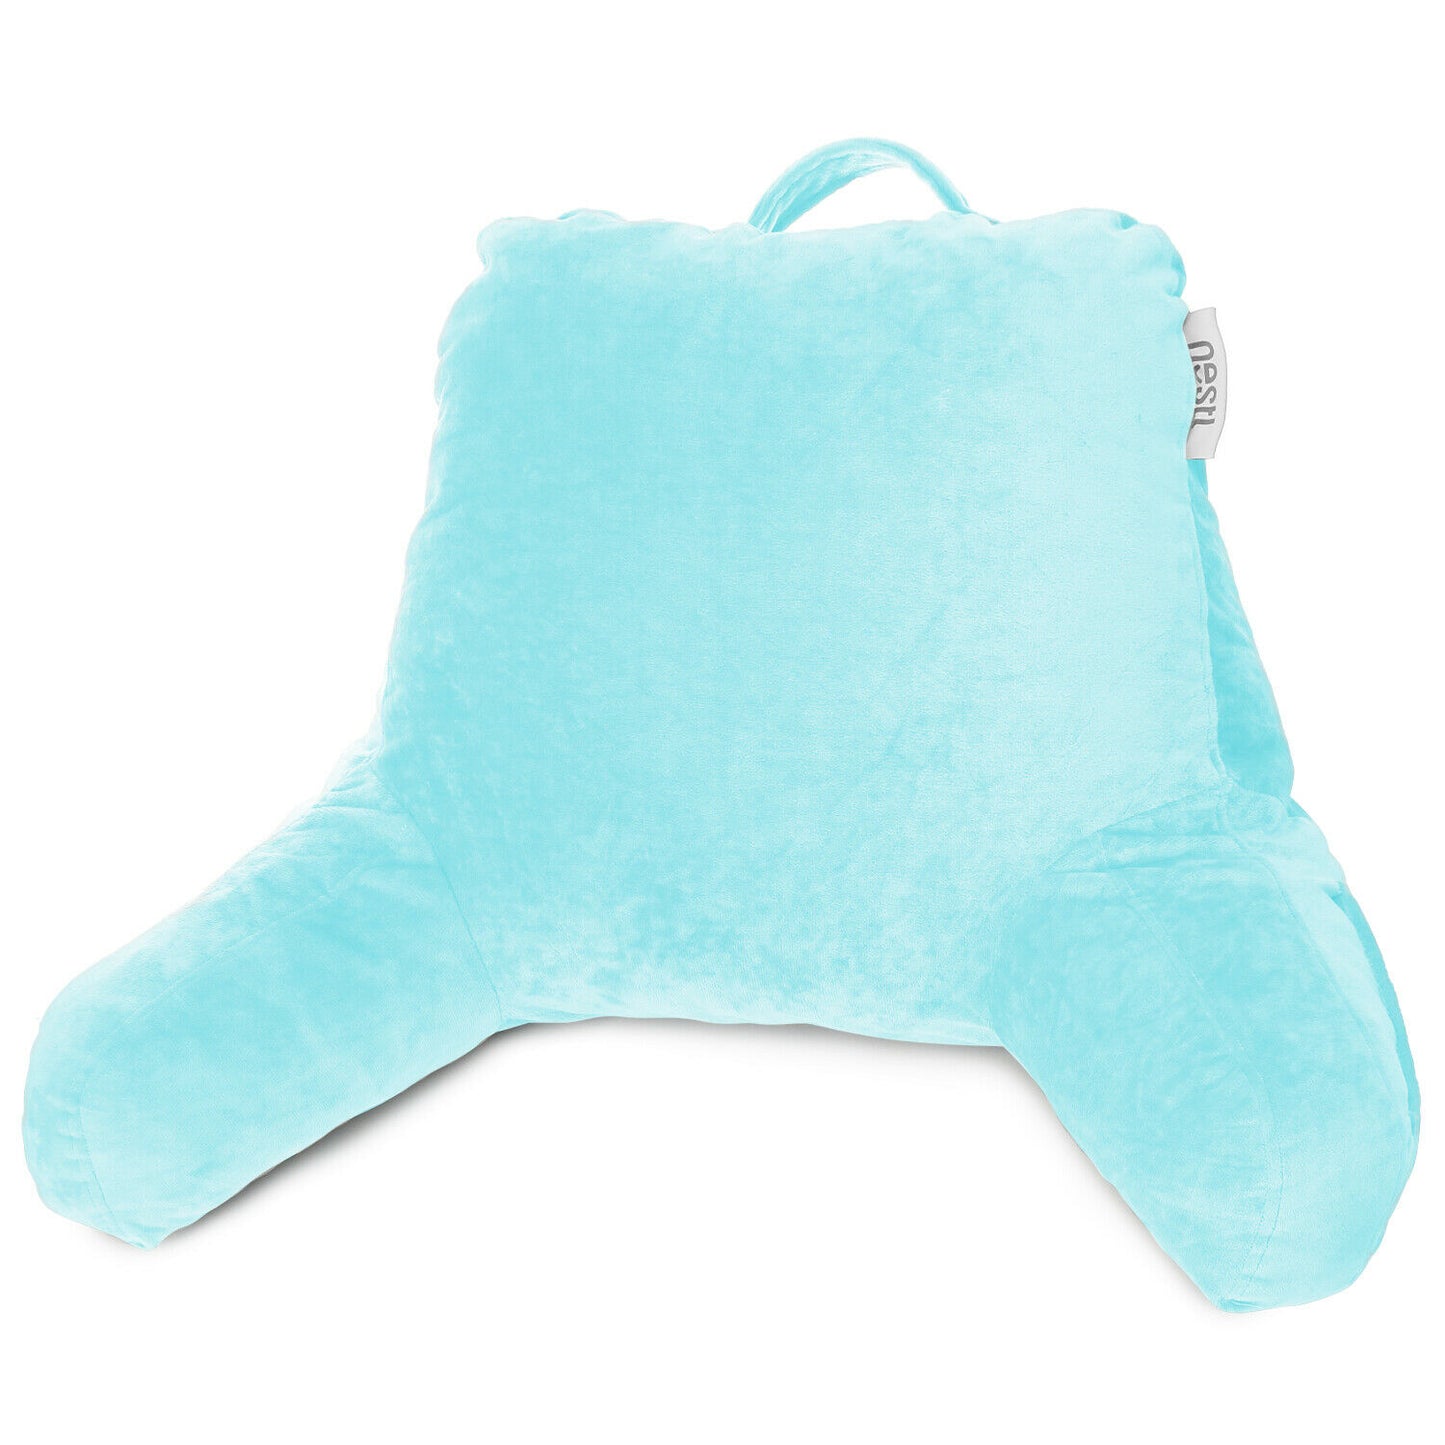 Pillows - TV & Reading Pillow - Kid's Memory Foam Bedrest Back Pillow 12 Colors! - Aqua Light Blue